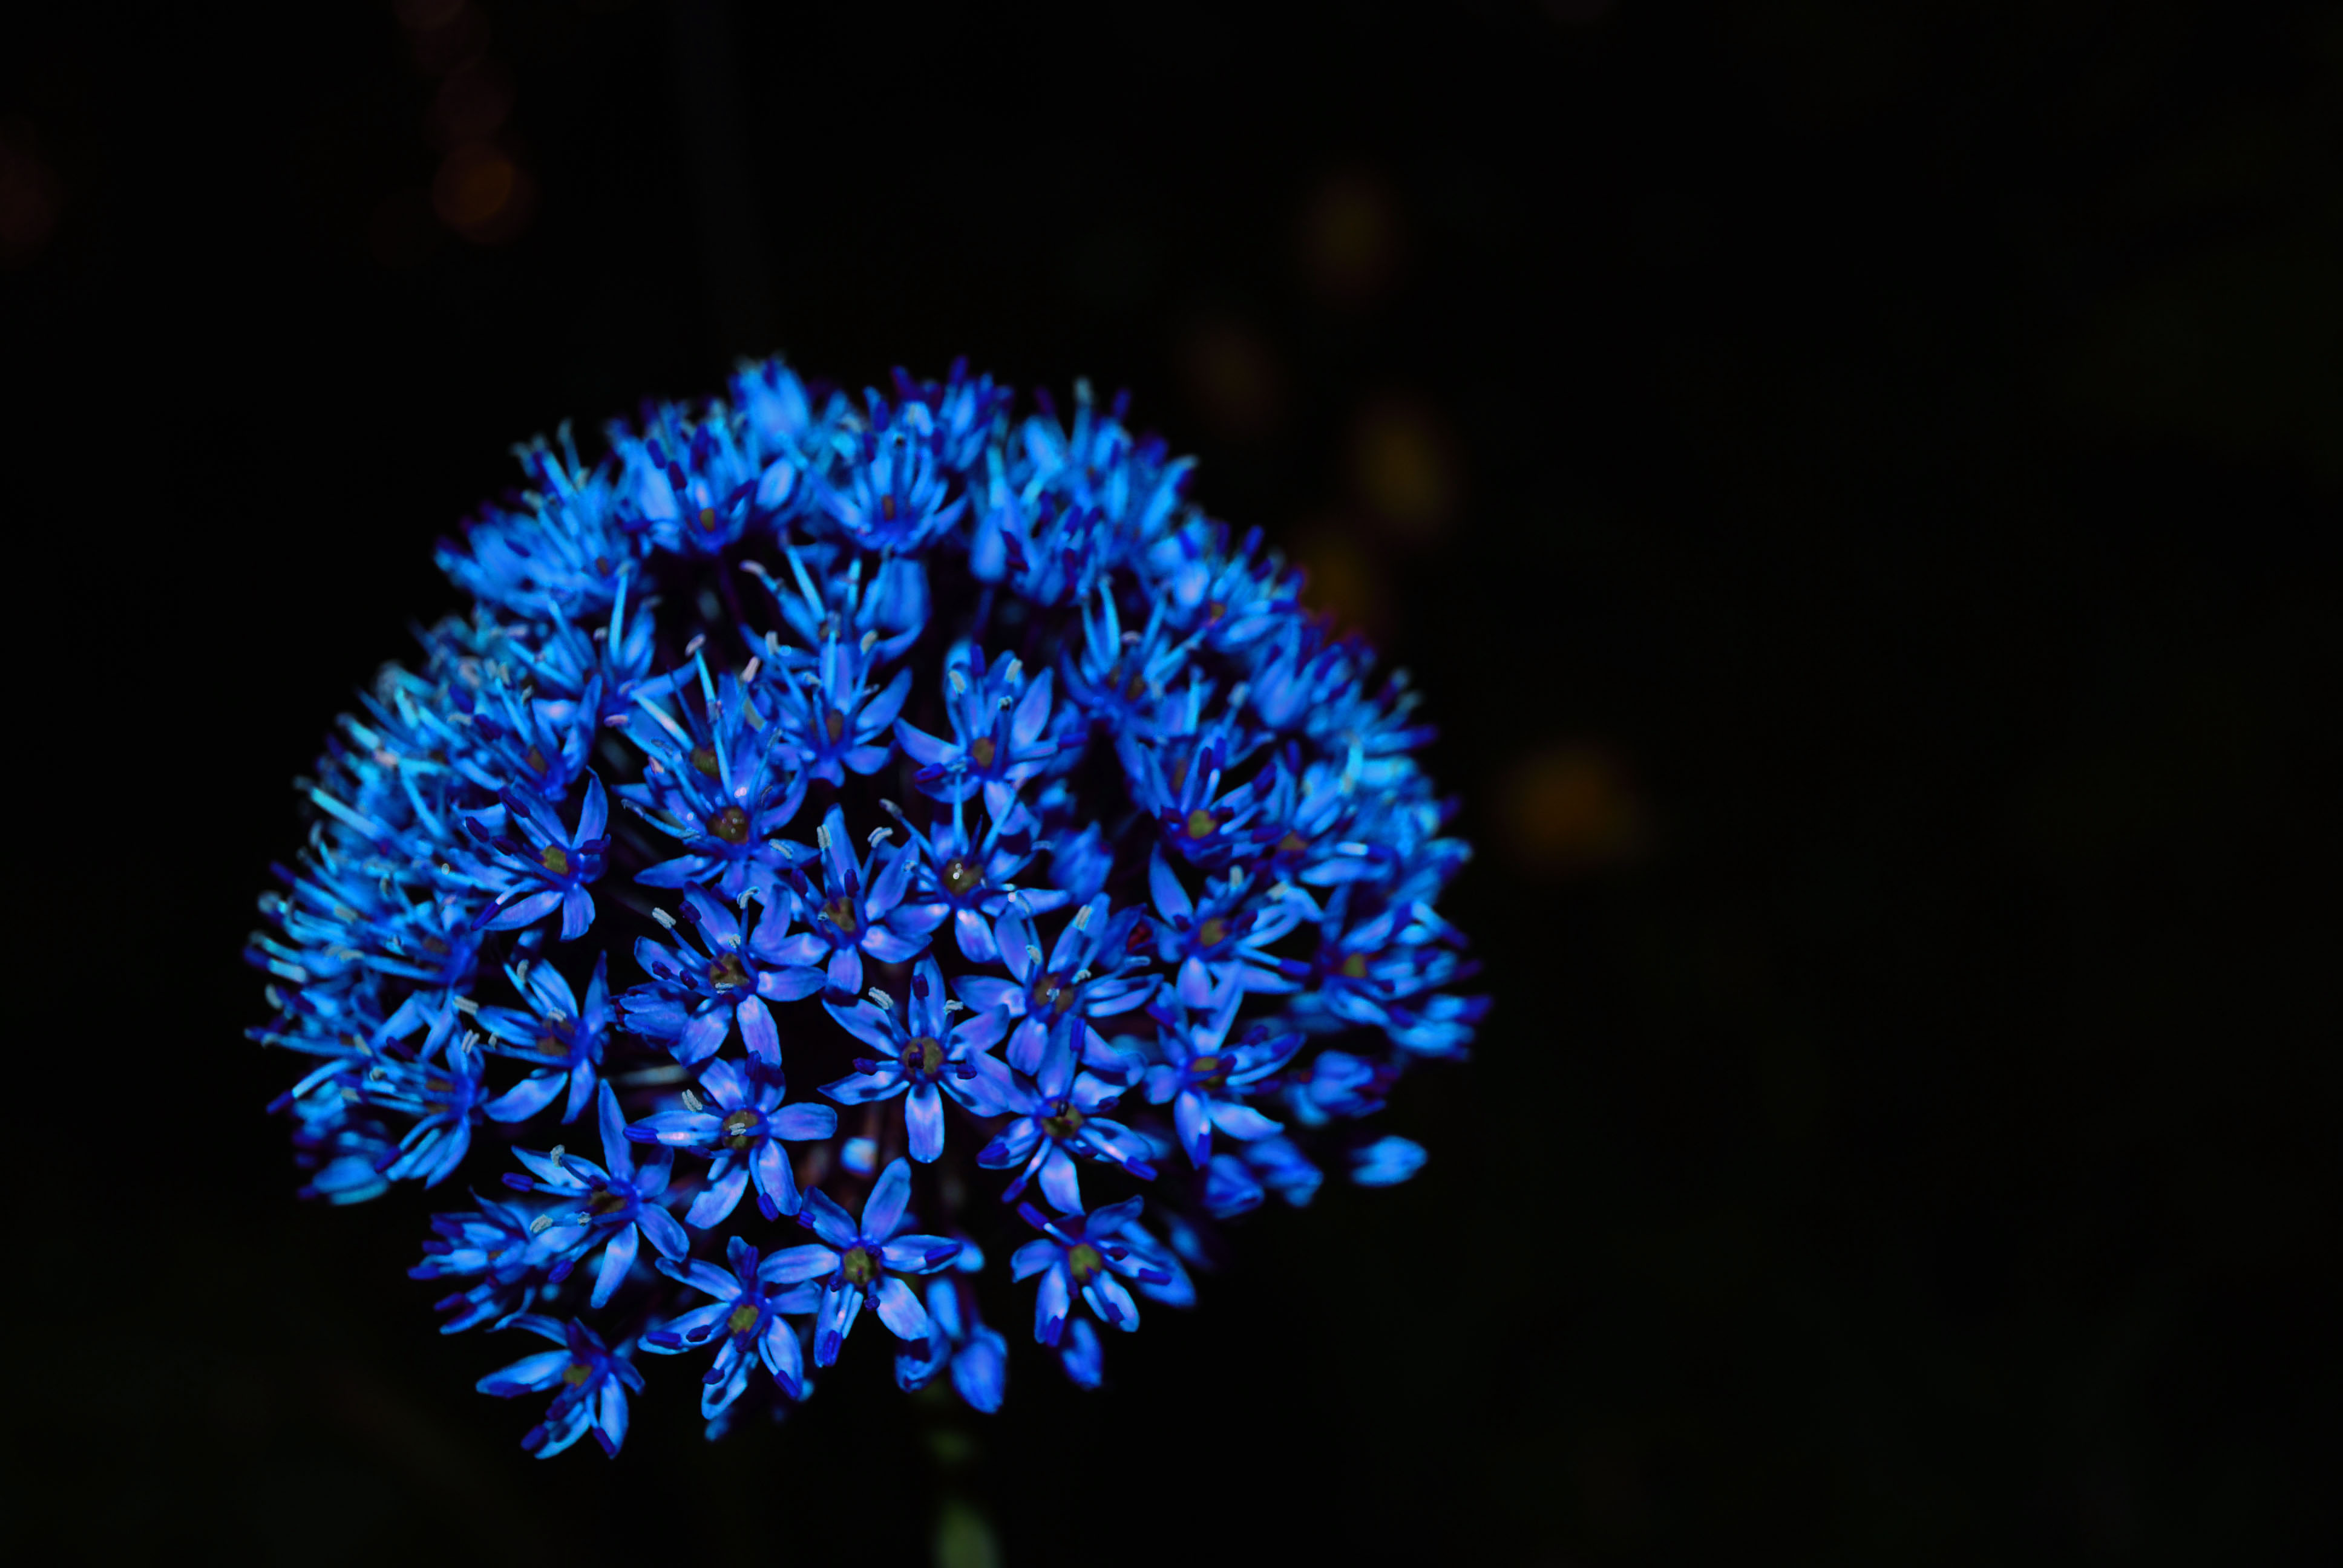 Blue Flowers Wallpapers | Flower Wallpapers | Flowers | Pinterest ...